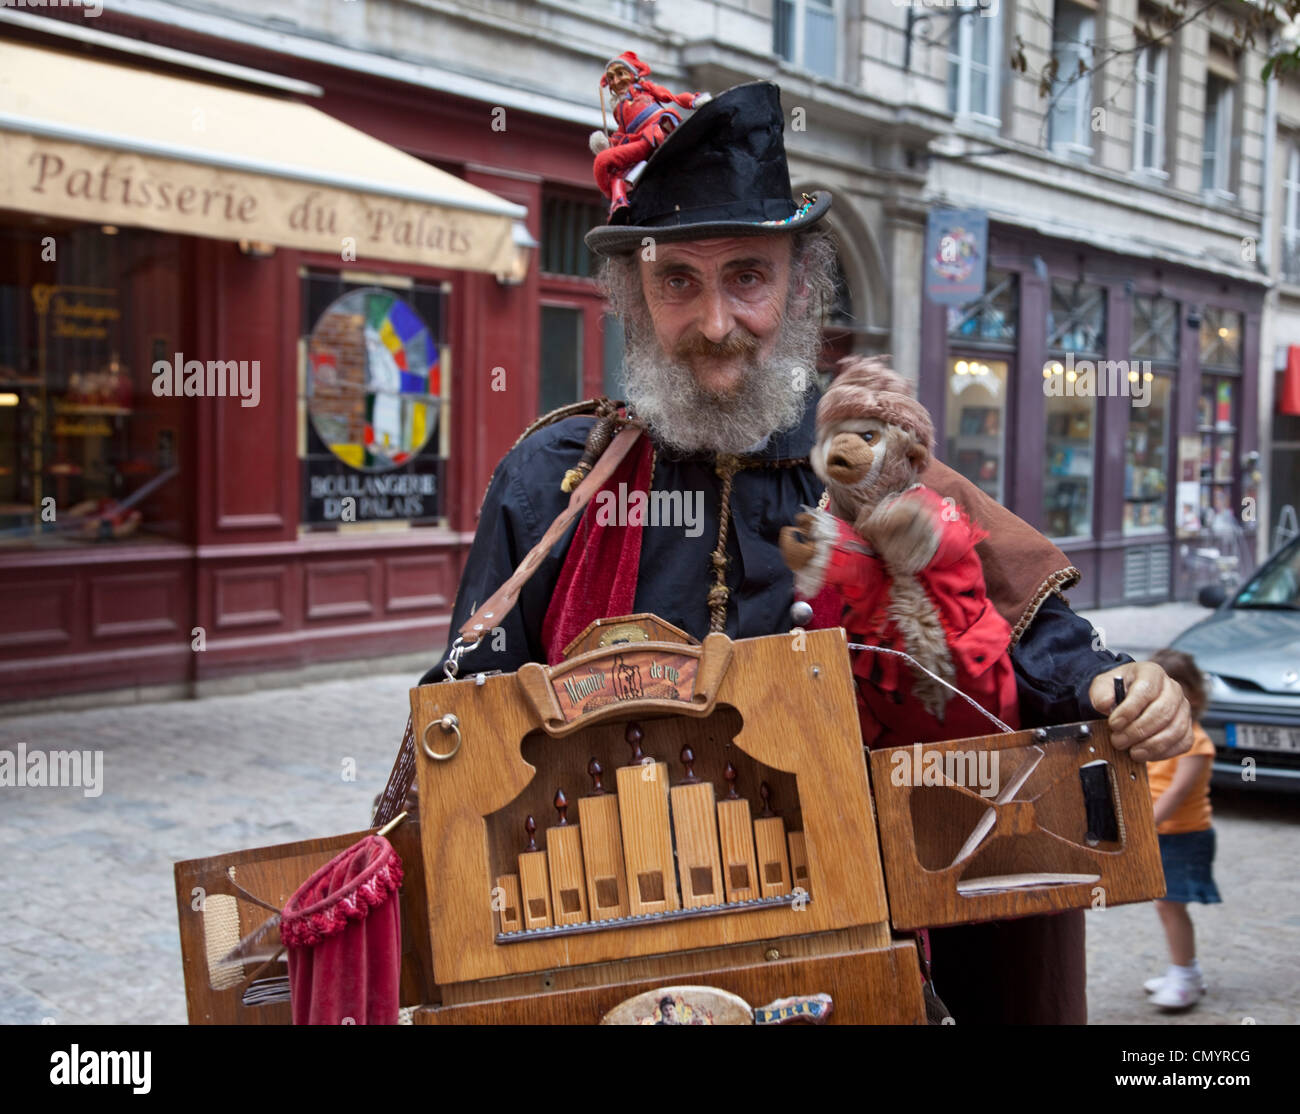 L'artista di strada con organo a mano nella storica costum con Vieux Lyon, centro della città vecchia di Lione Rodano Alpi, Francia, Centro Storico, U Foto Stock